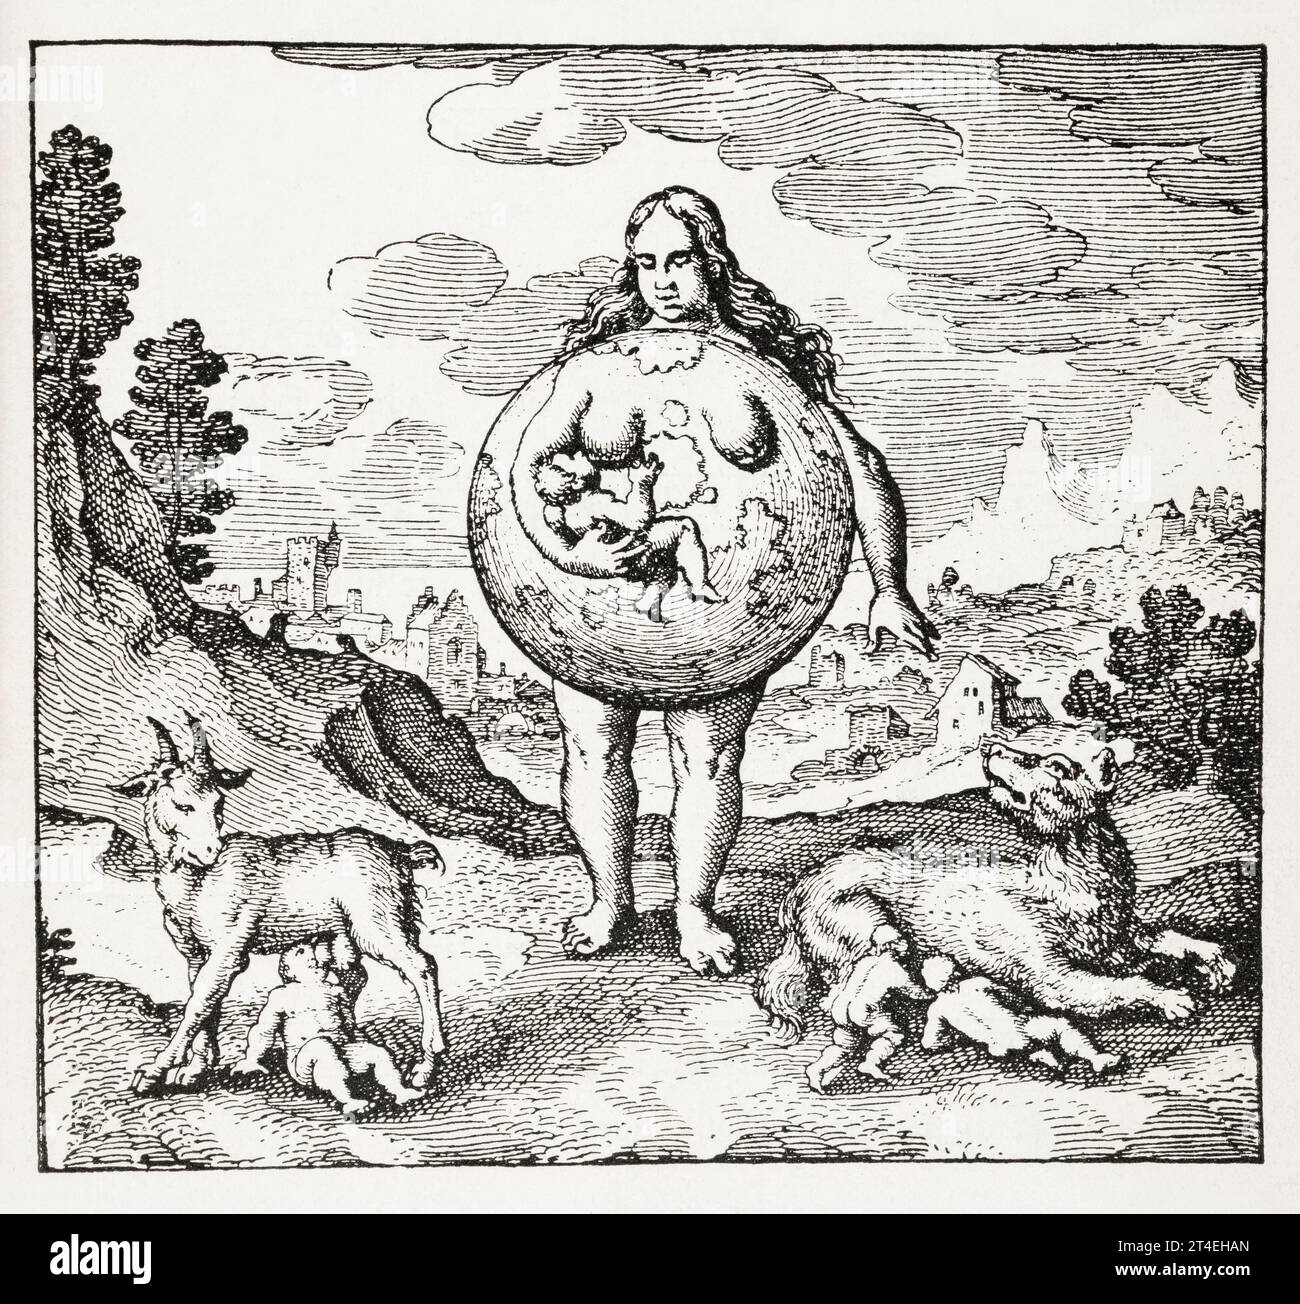 Mystische Mutter-Erde-Figur [Emblem 2] aus Michael Maiers musikalisch-alchemistischem Werk: Atalanta fugiens, 1618. Siehe Hinweise. Stockfoto